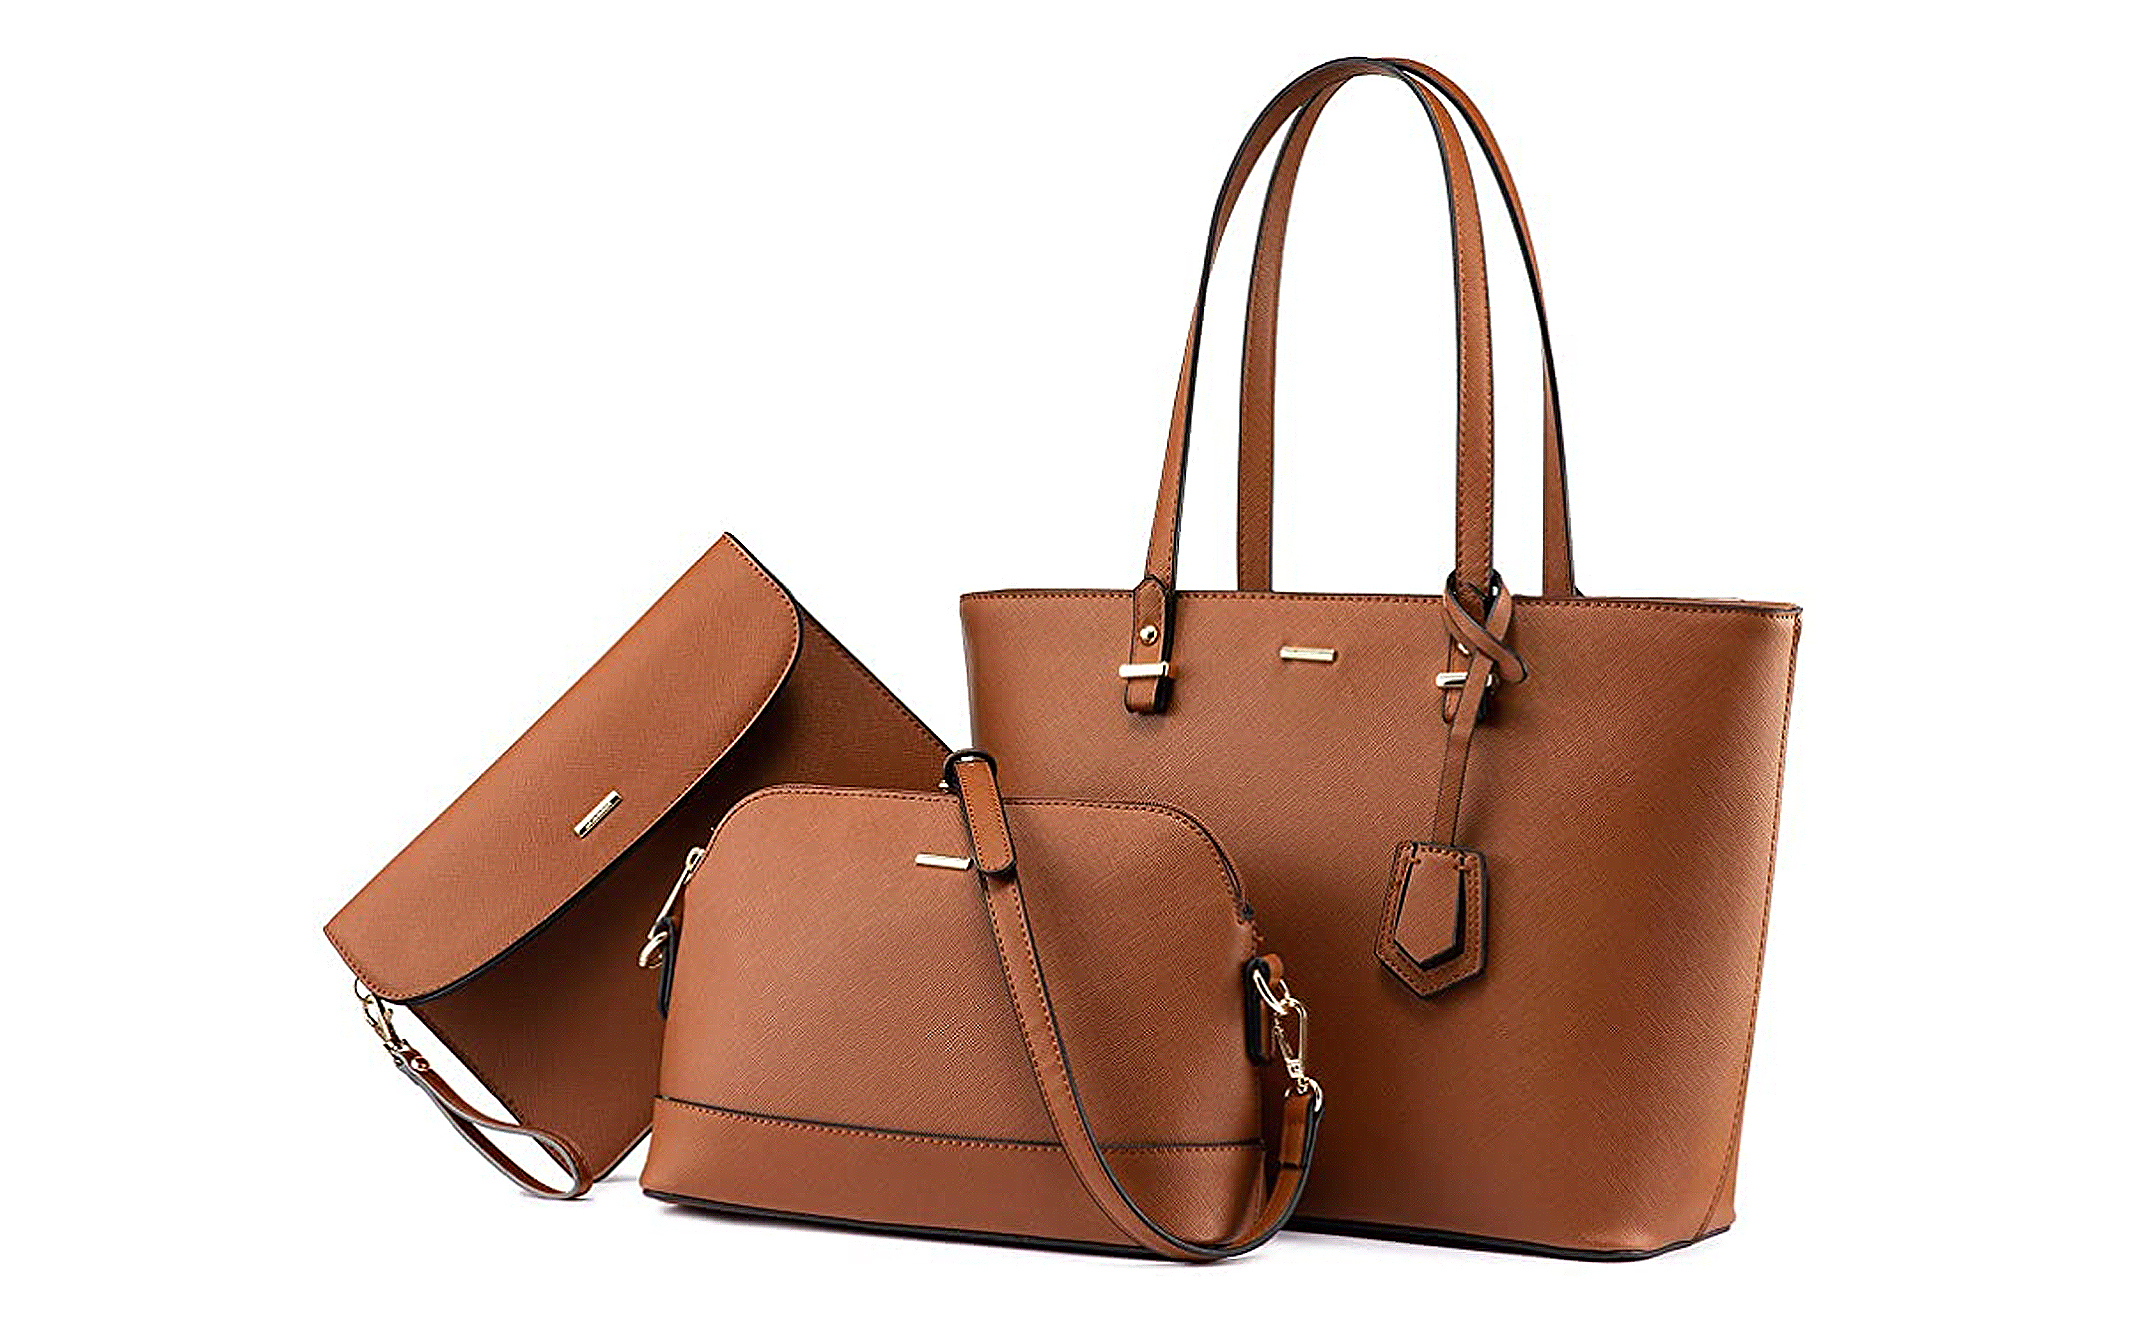 Women's 3pcs Purse Handbags Wallet Sets